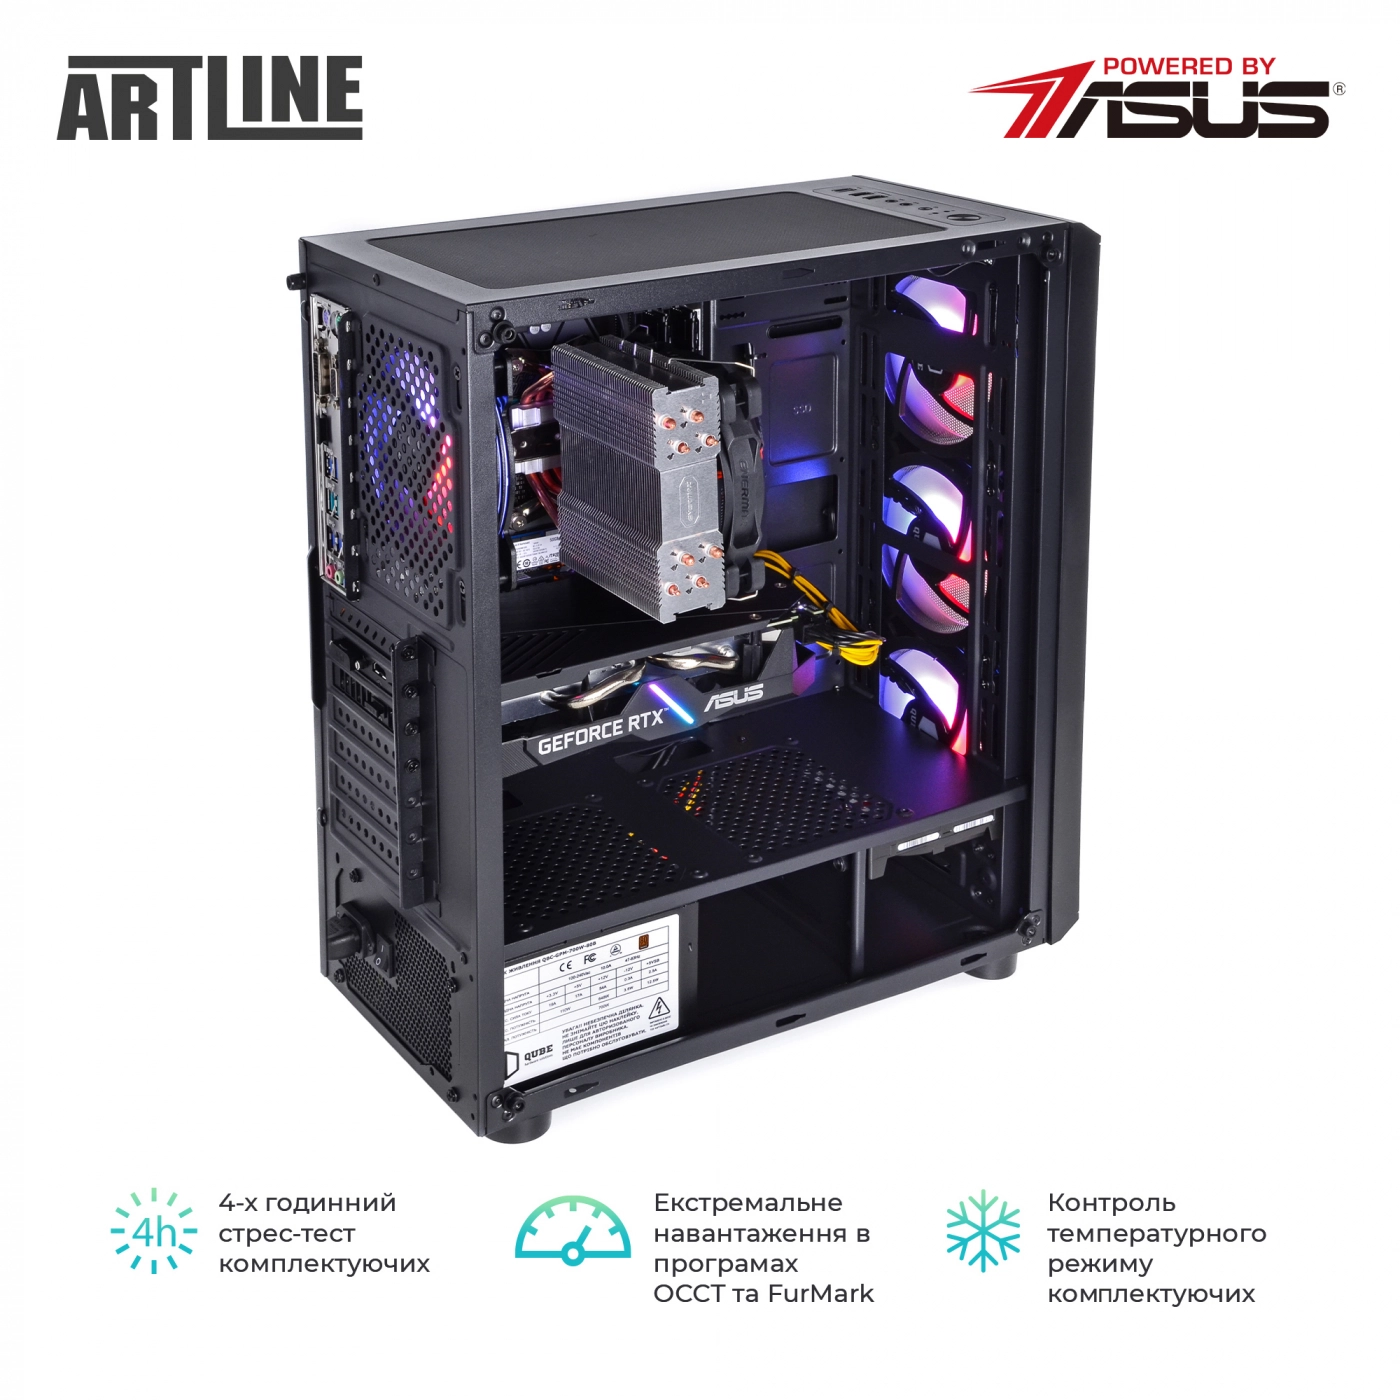 Купить Компьютер ARTLINE Gaming X63v19 - фото 6